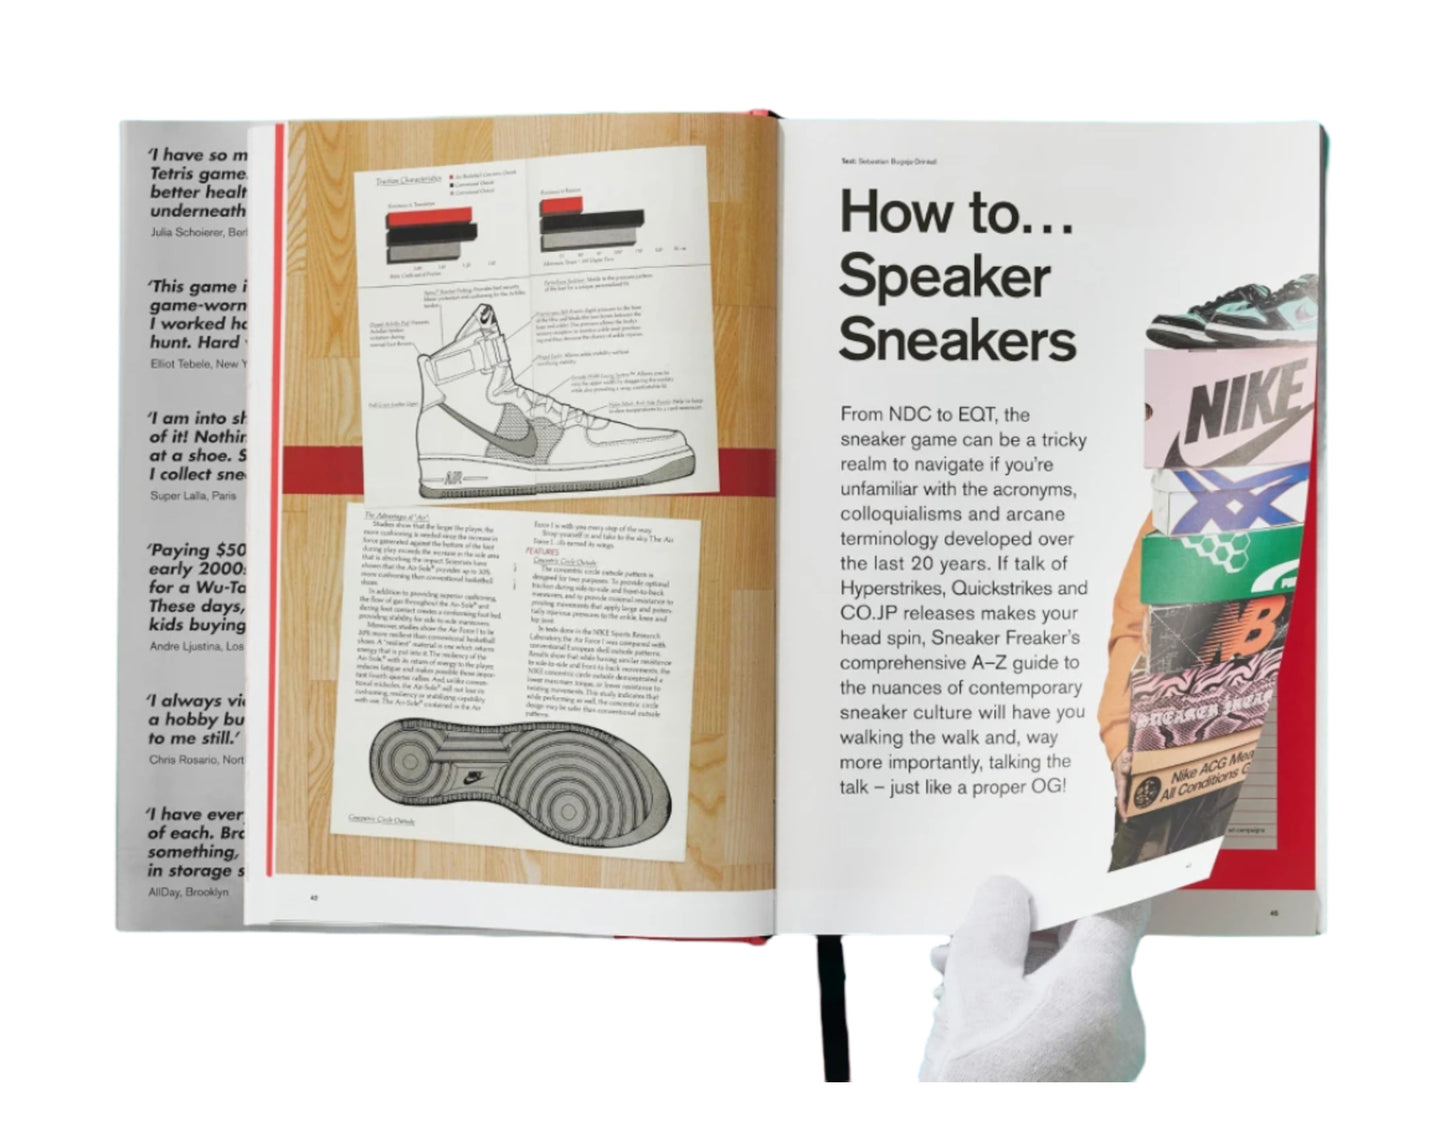 Taschen Books - Sneaker Freaker - World's Greatest Sneaker Collectors